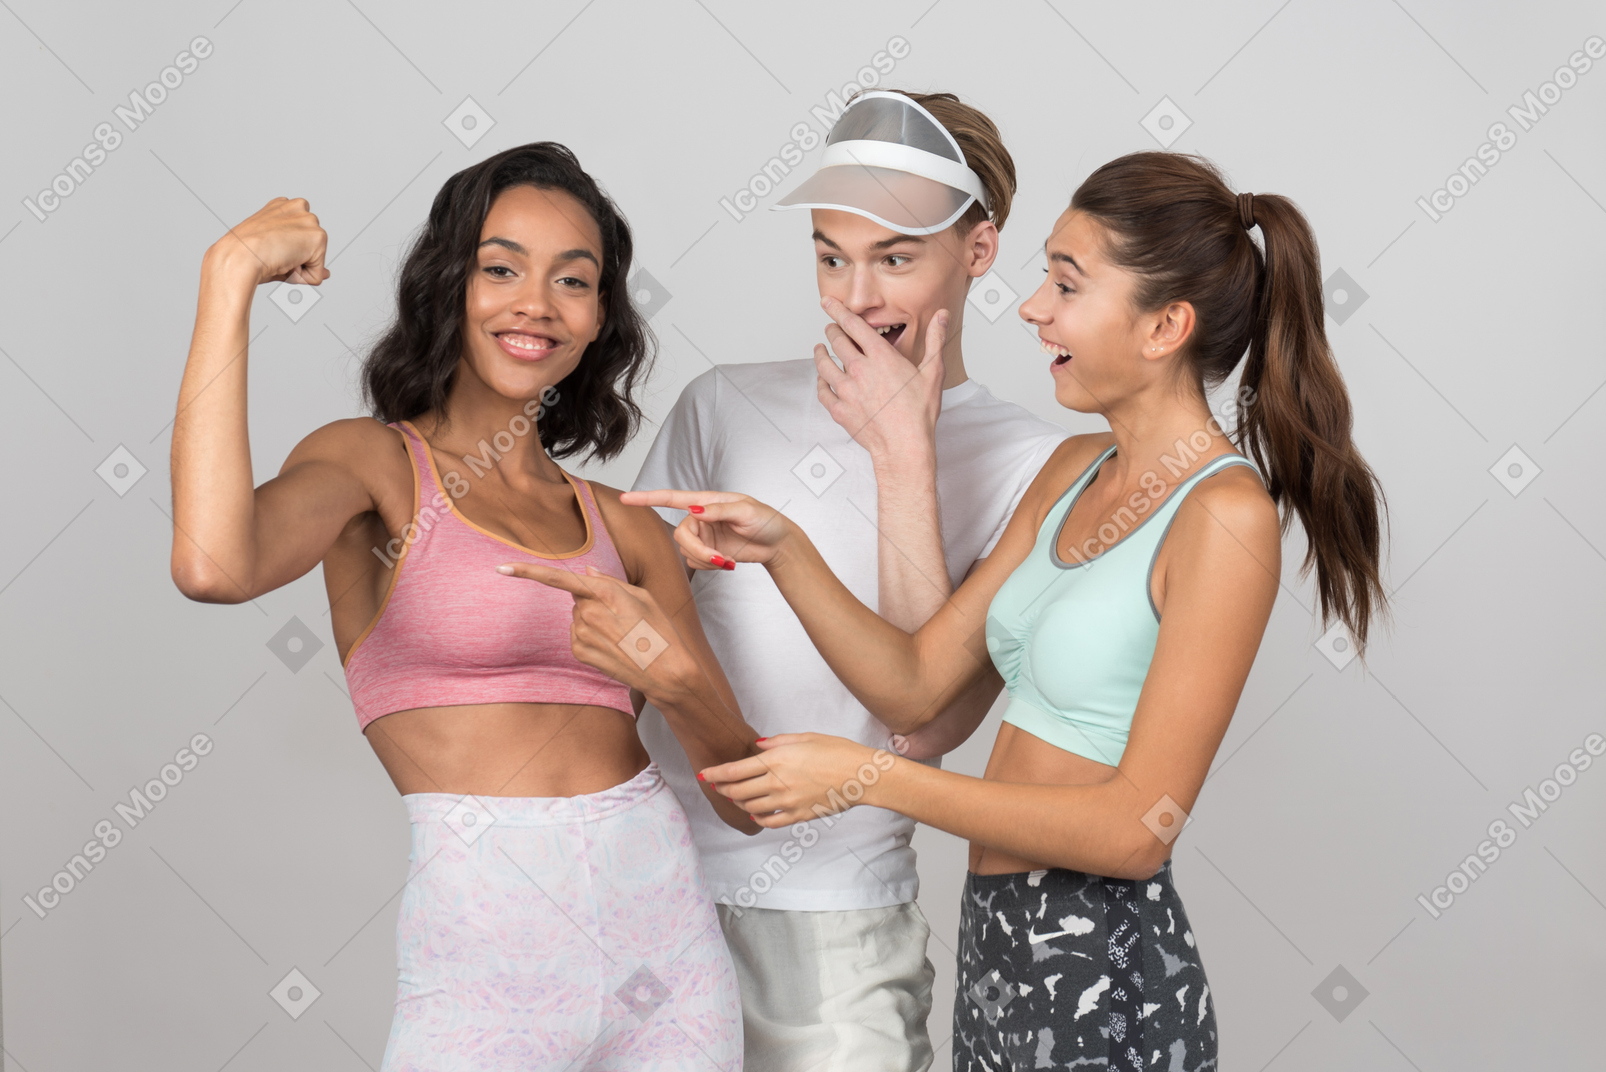 여자와 남자 친구의 근육을 확인